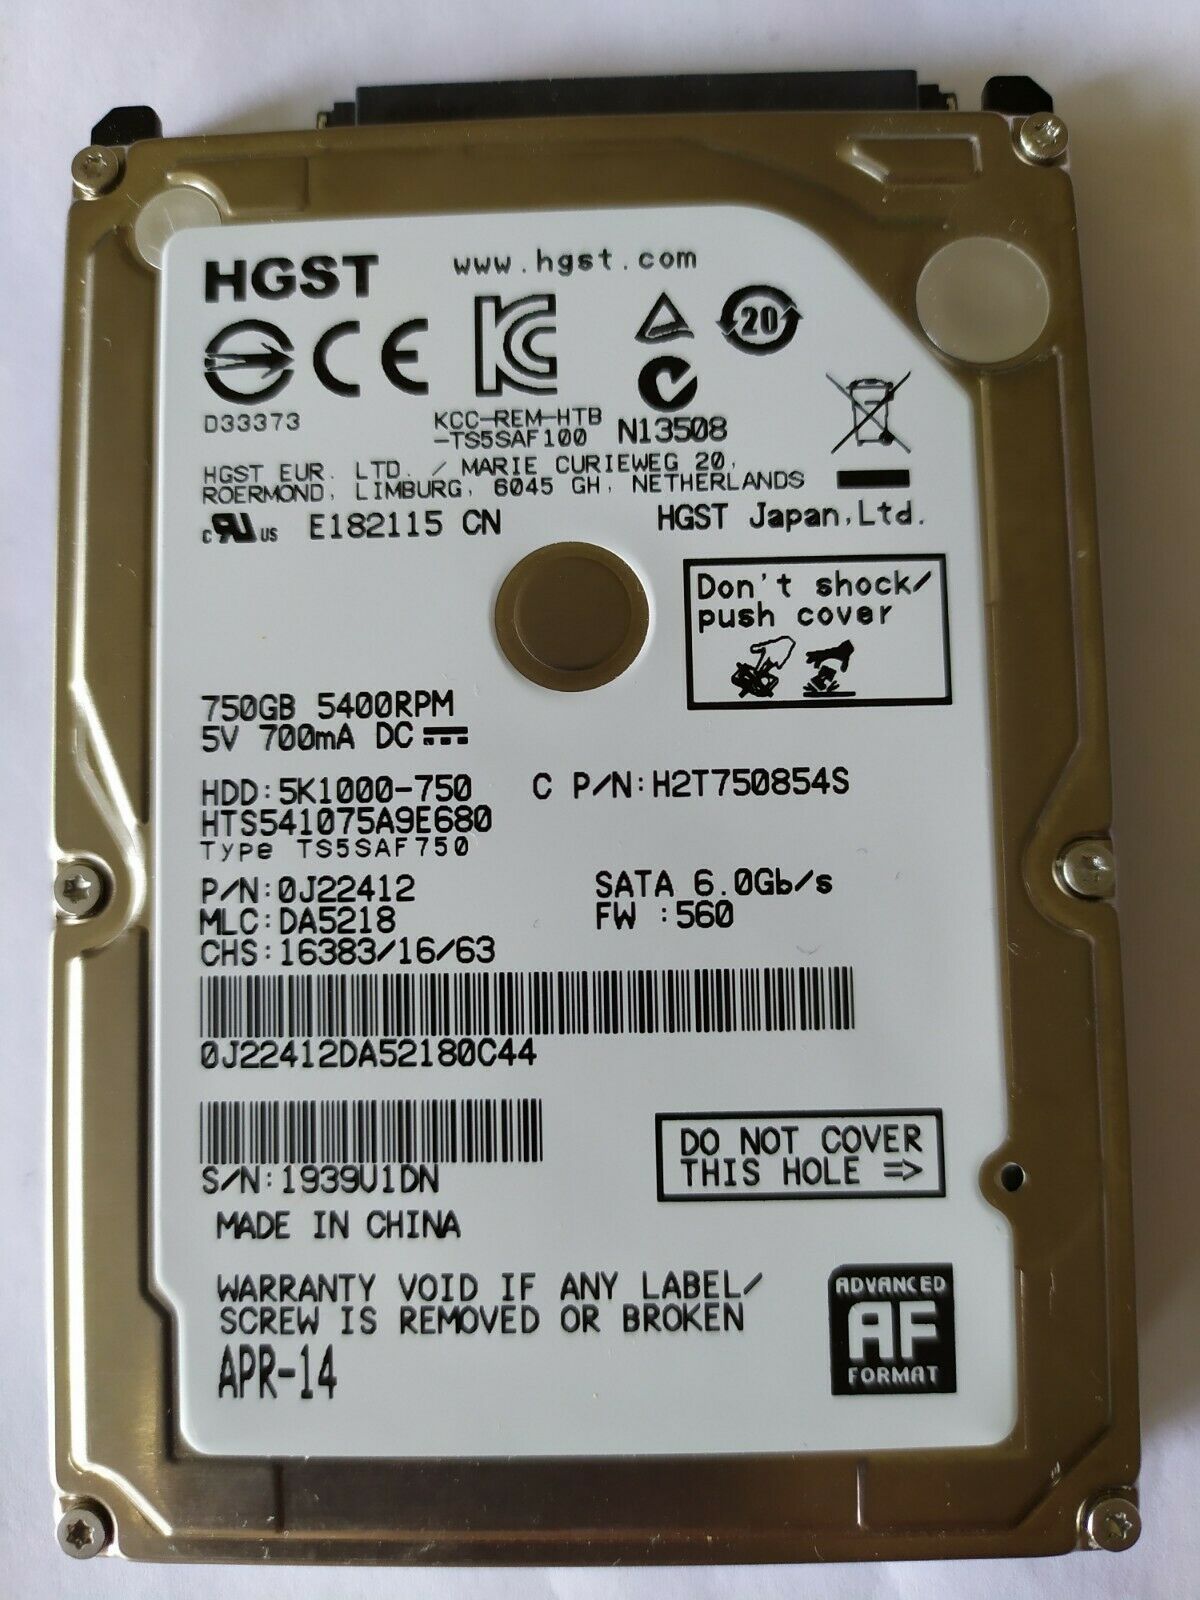 HGST 750GB 2.5" SATA HDD 5400rpm 5K1000-750